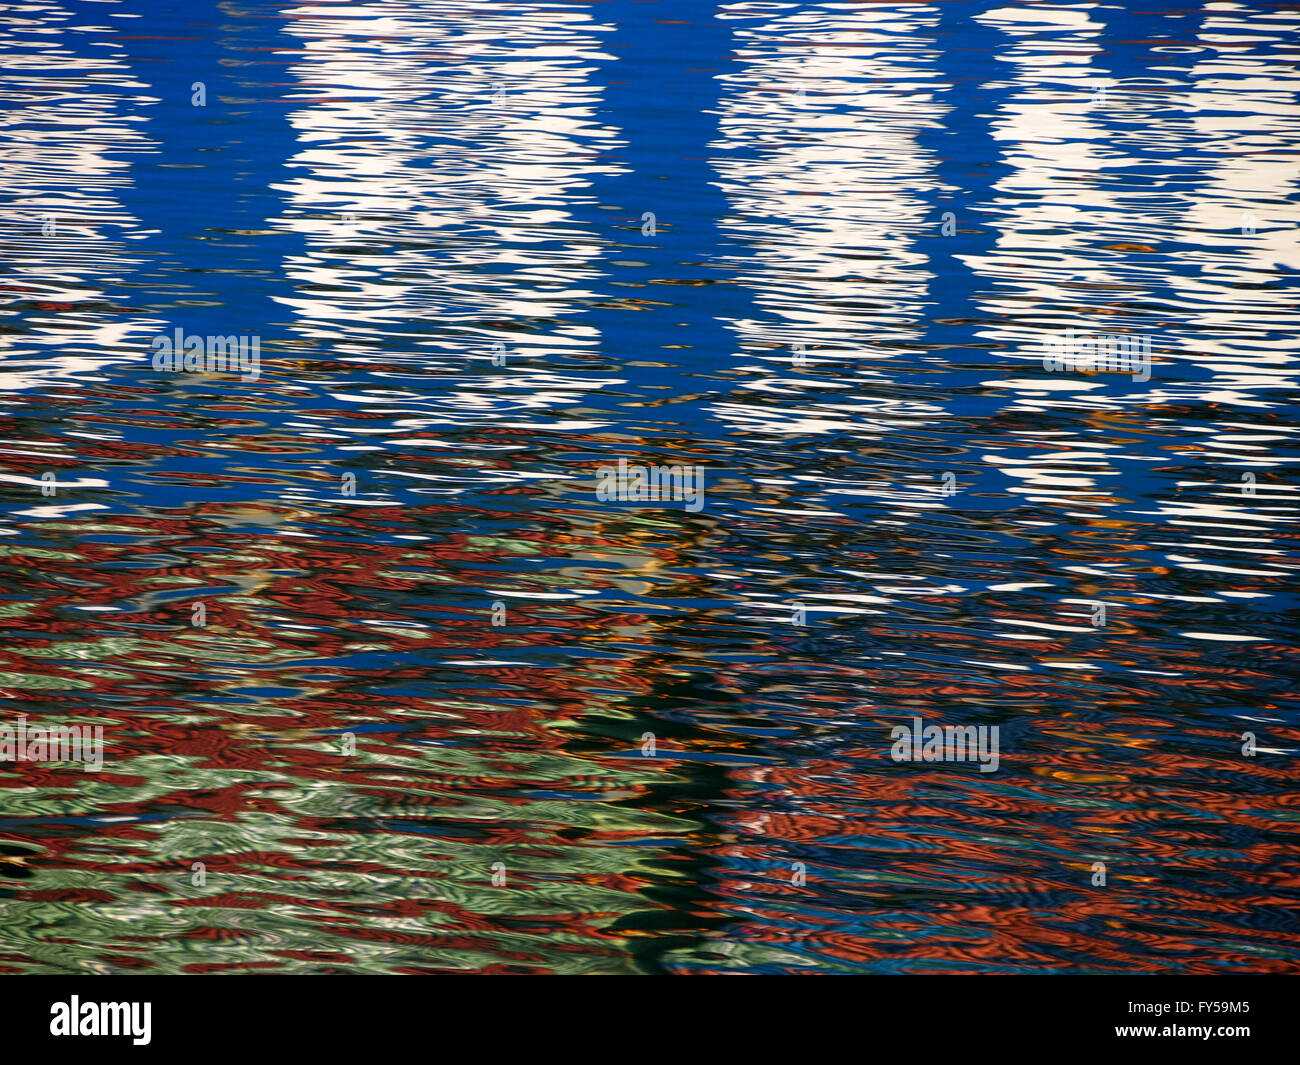 Rot-blau-weißen Farbenmuster schimmert und spiegelt sich in den Wellen des Wassers eine psychedelische Muster. Stockfoto